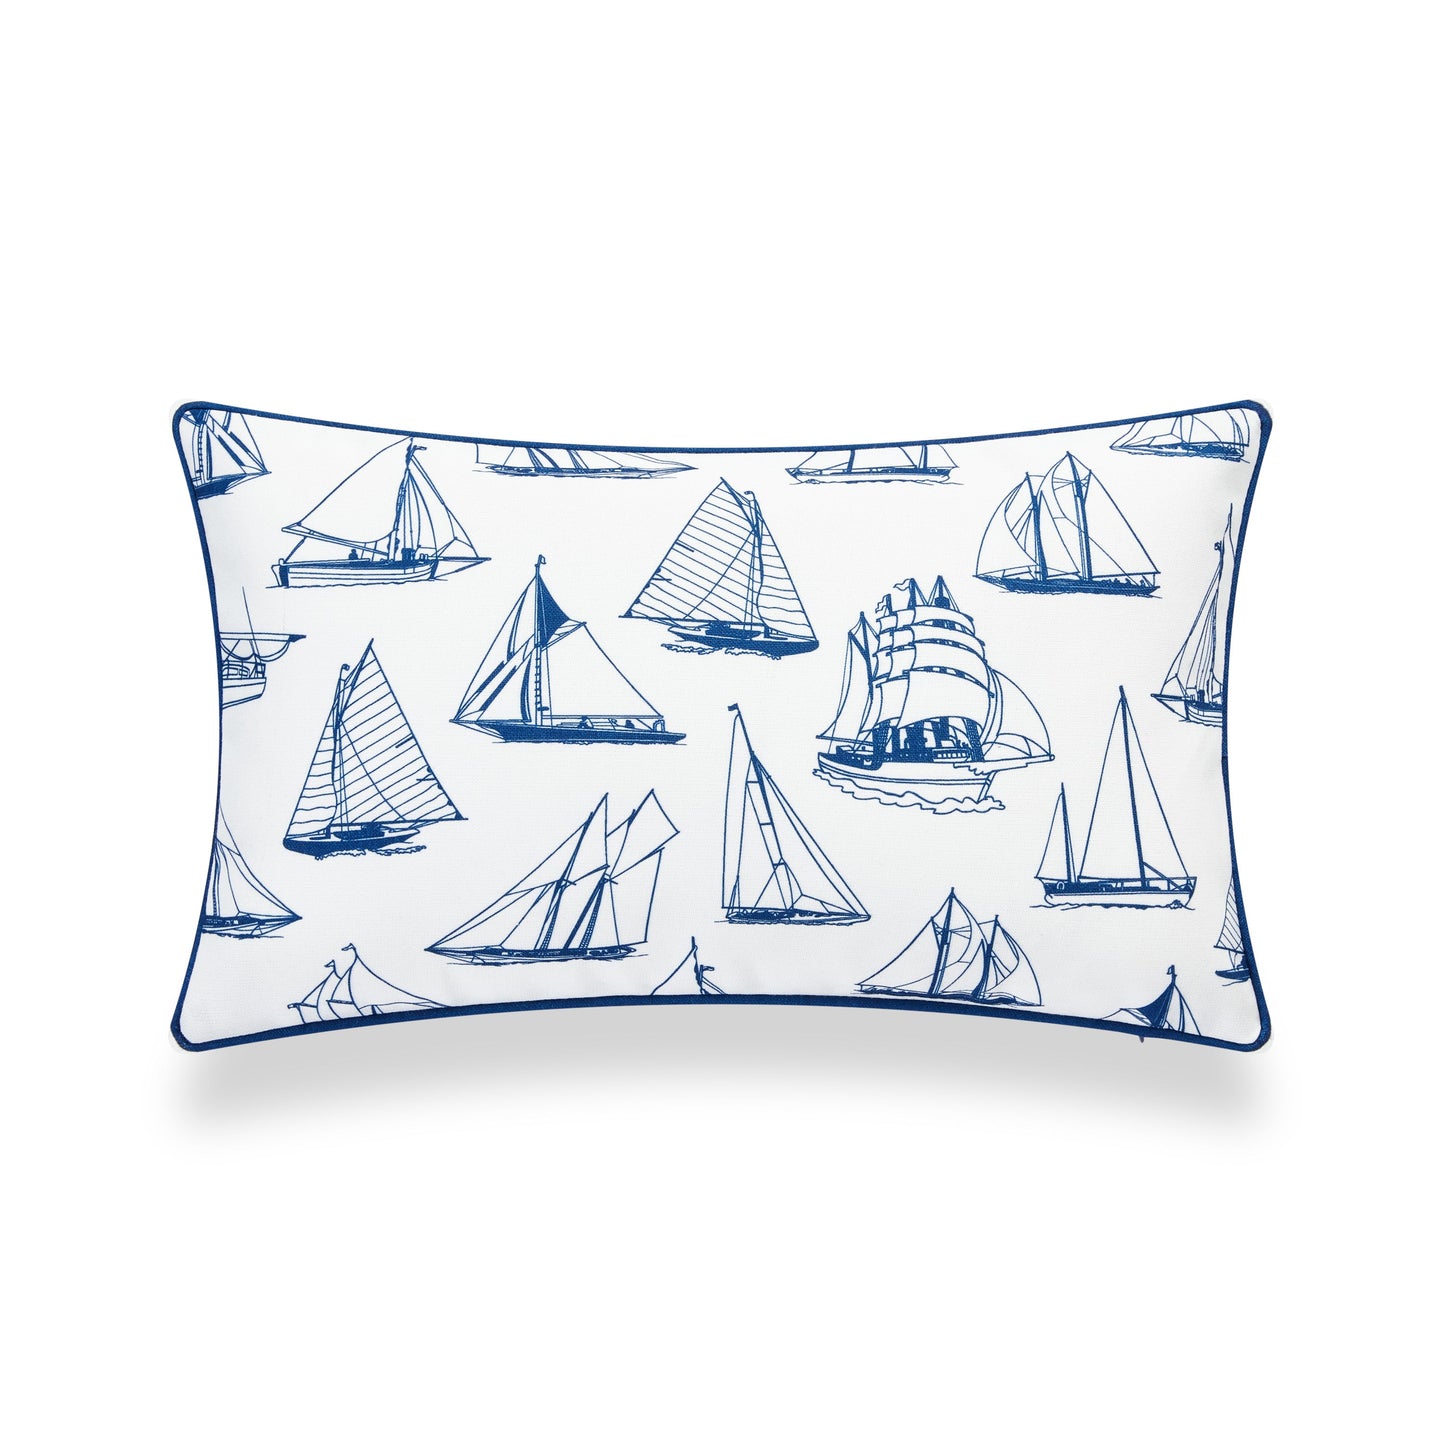 Coastal Hampton Style Indoor Outdoor Lumbar Pillow Cover, Nautical Yacht, Navy Blue, 12"x20"-4